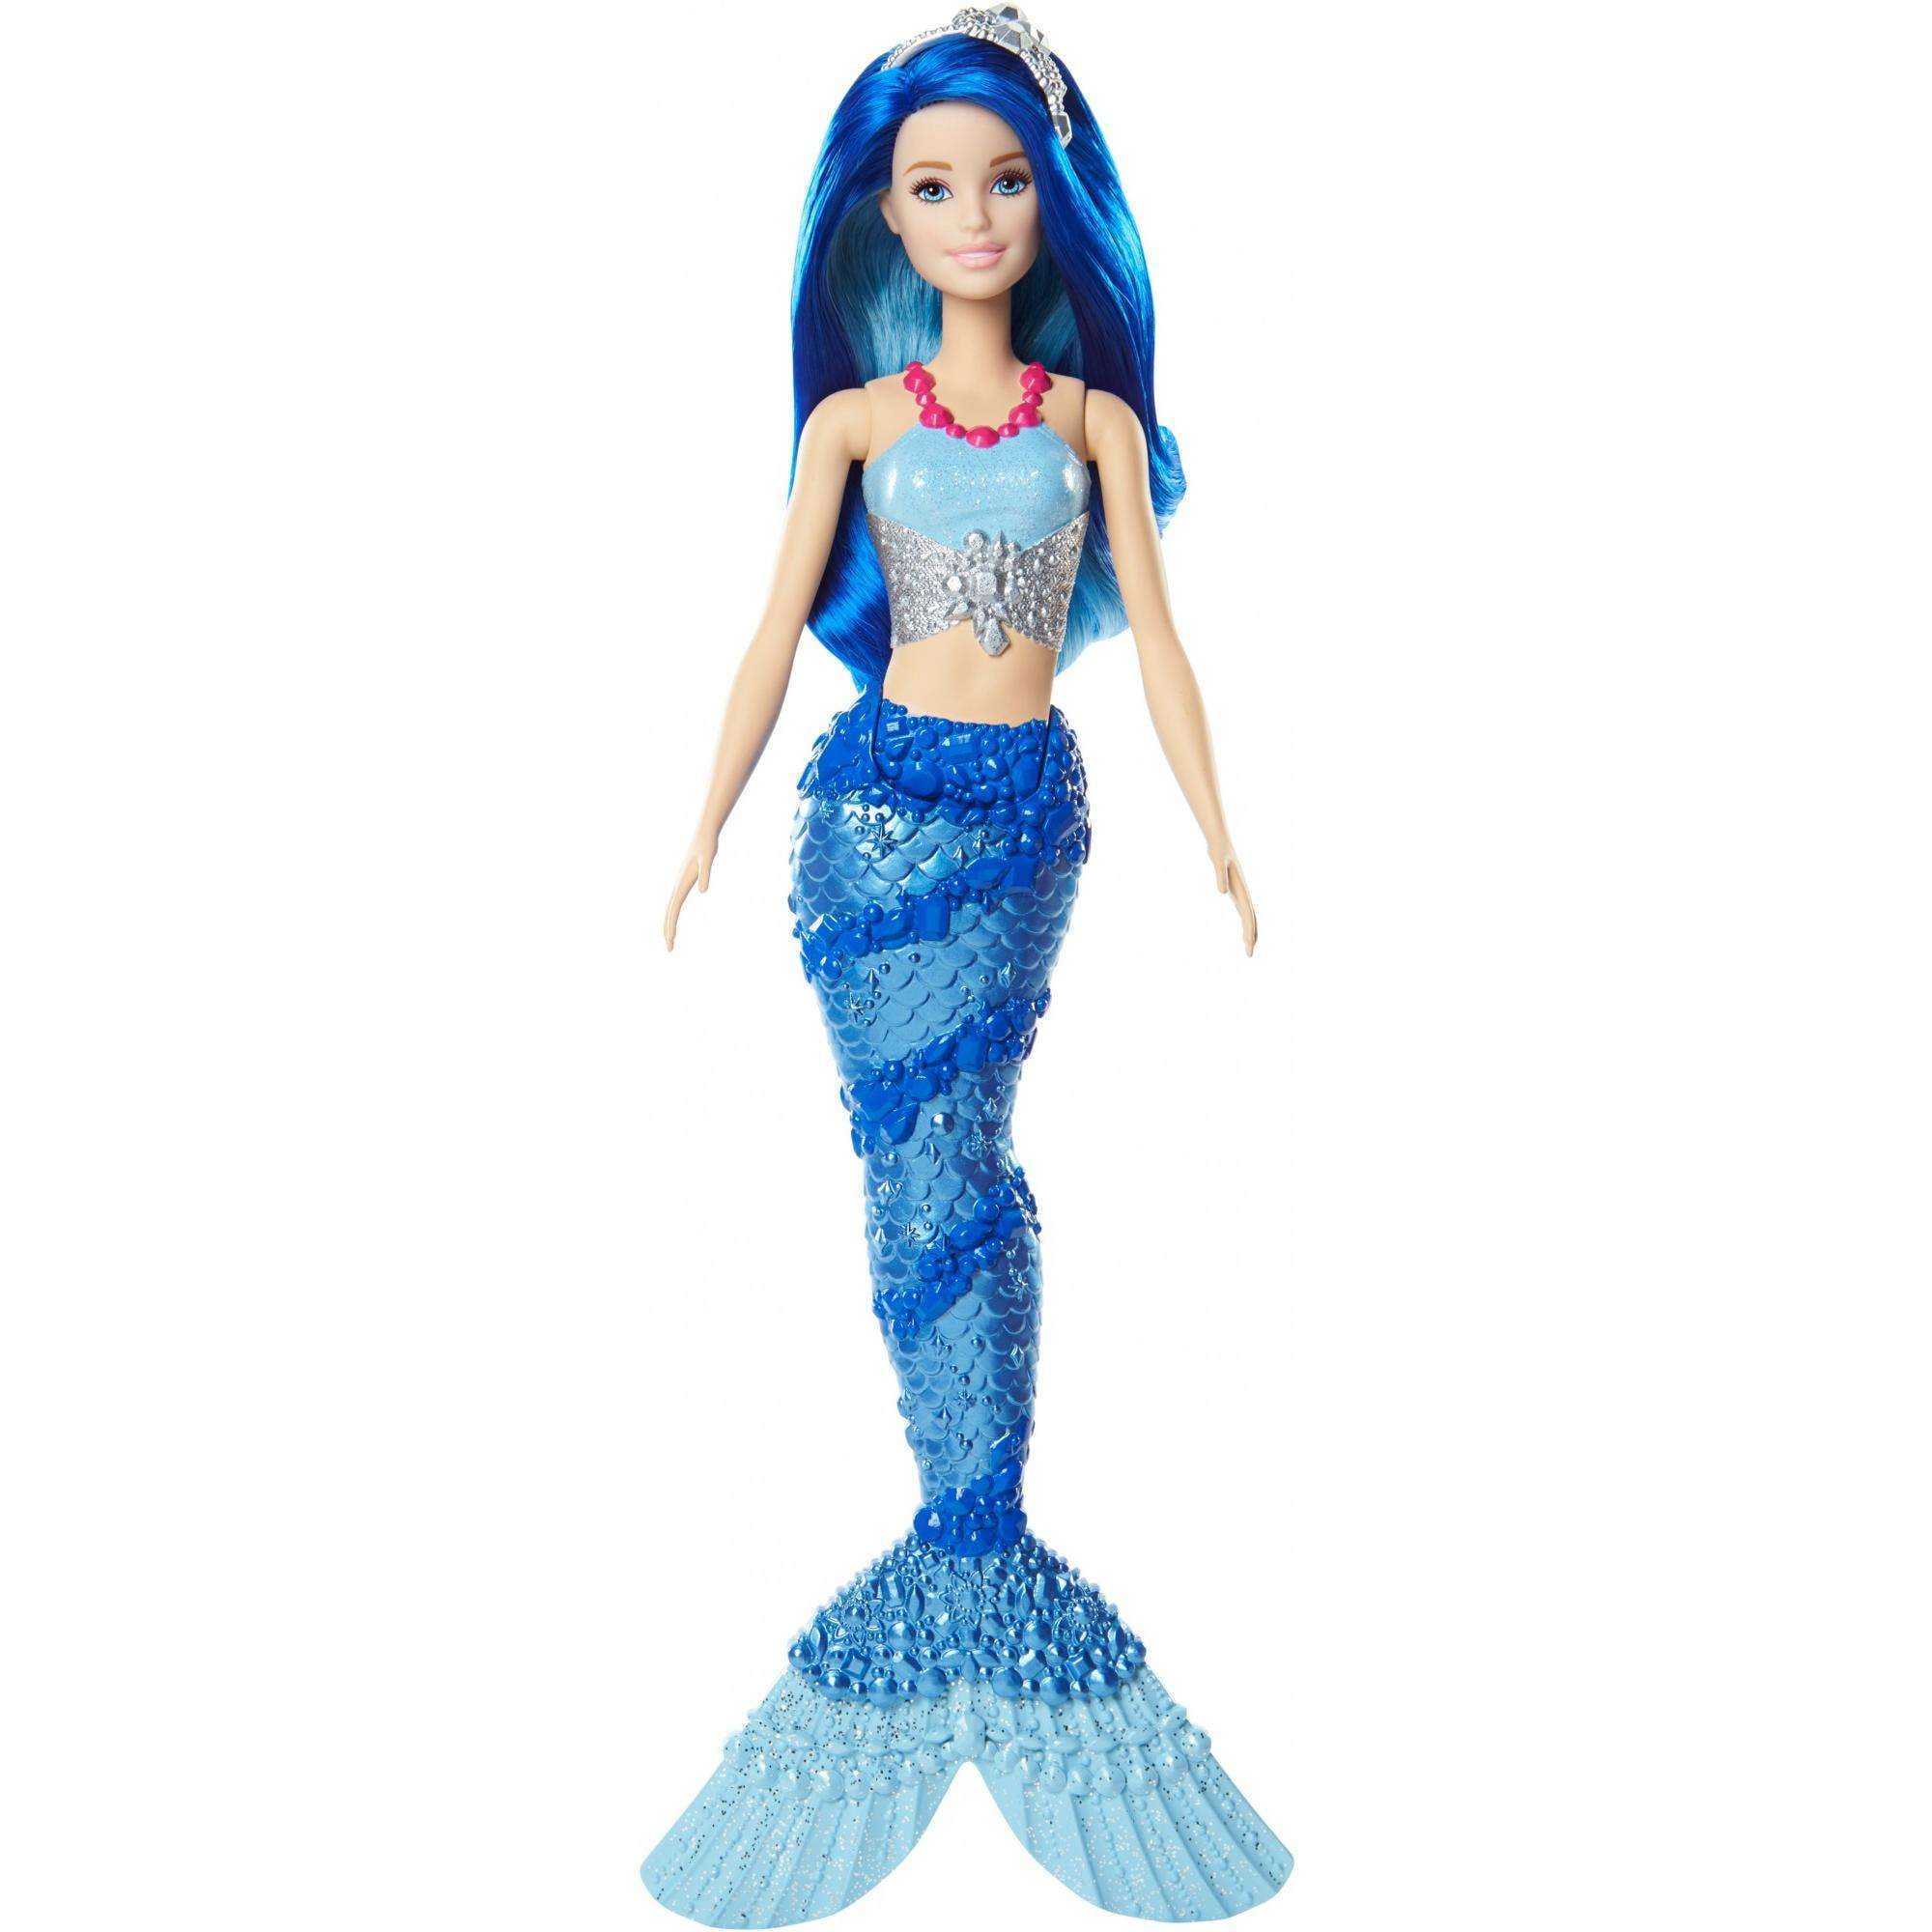 2019 Barbie Dreamtopia Mermaid Slime Doll-New in Package